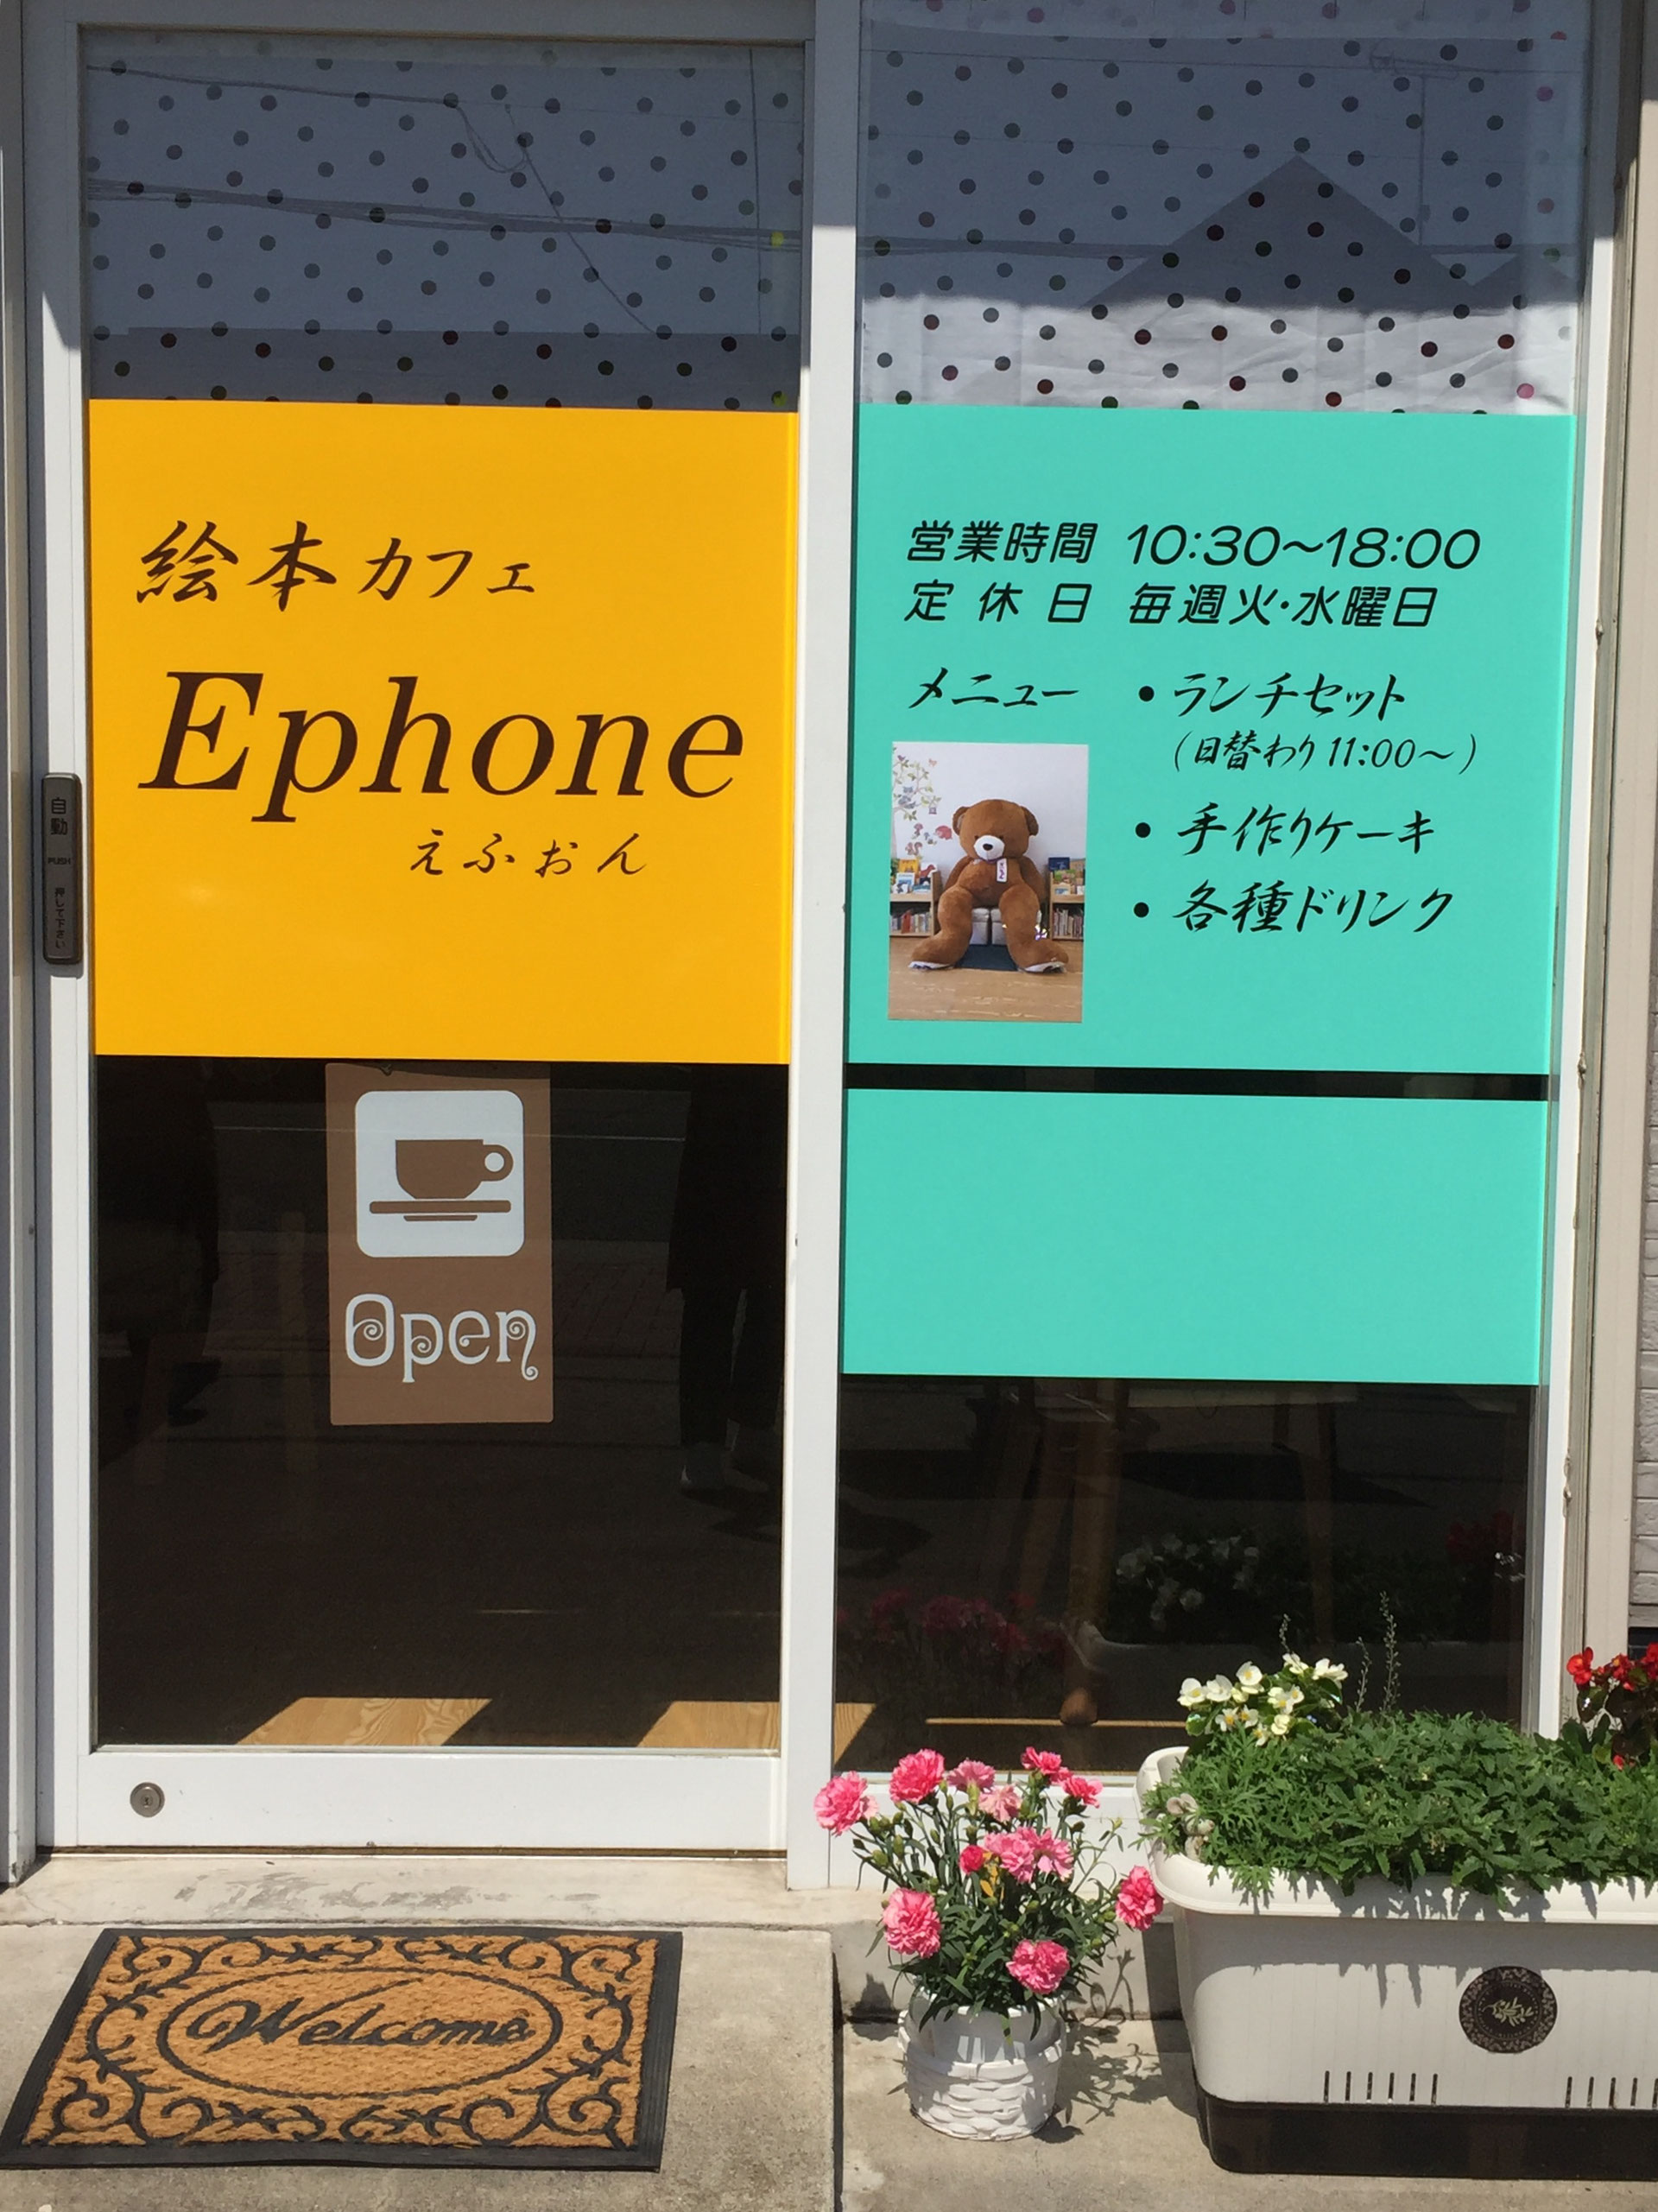 絵本カフェ Ephone 横須賀 絵本カフェ Ephone